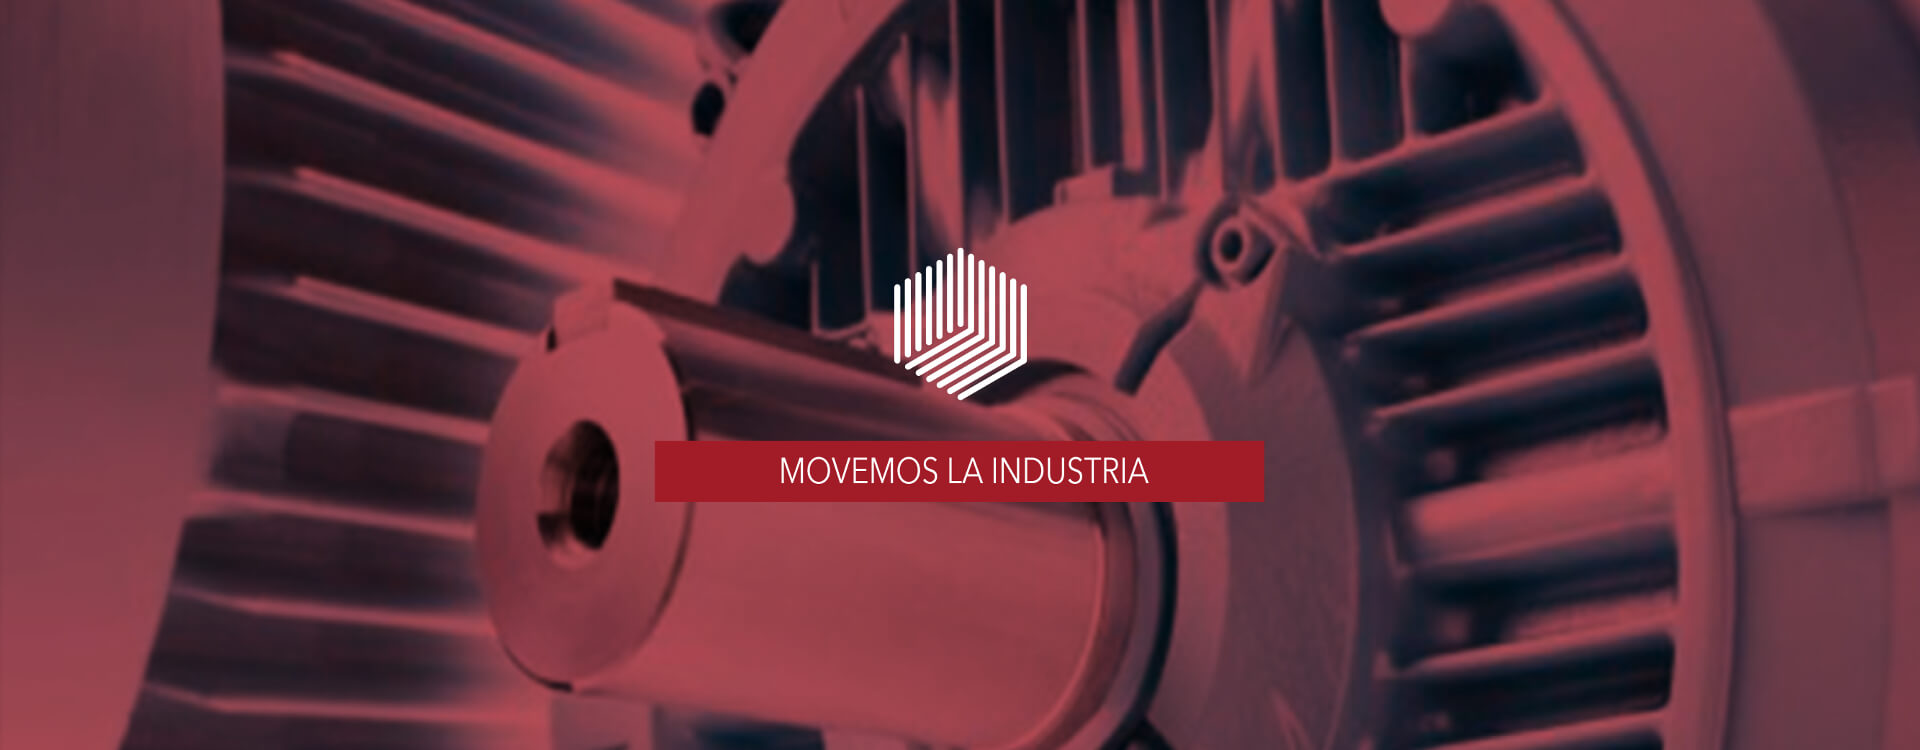 Banner Movemos la industria sobre fondo de maquinaria roja Steknos